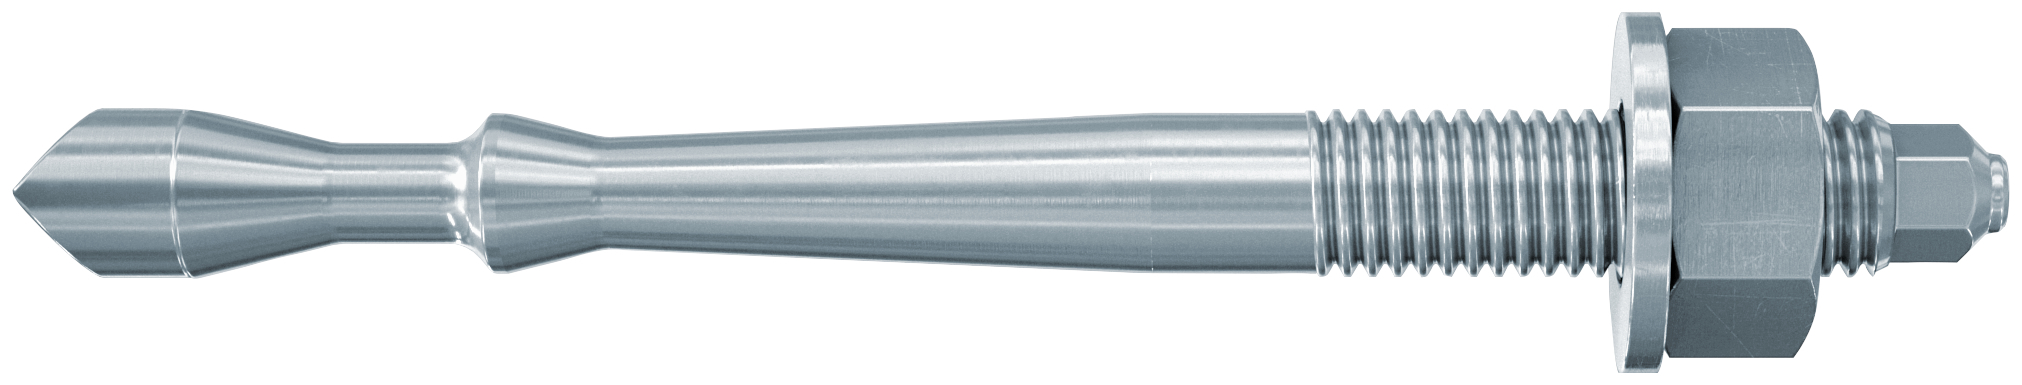 fischer Barra multicono in acciaio FHB II-A S M10x60-100 per ancorante chimico FIS HB (1 Pz.) Barra multicono corta in acciaio zincato classe 8.8. Massime prestazioni a trazione in calcestruzzo fessurato e a ridotte distanze dai bordi. fie1174